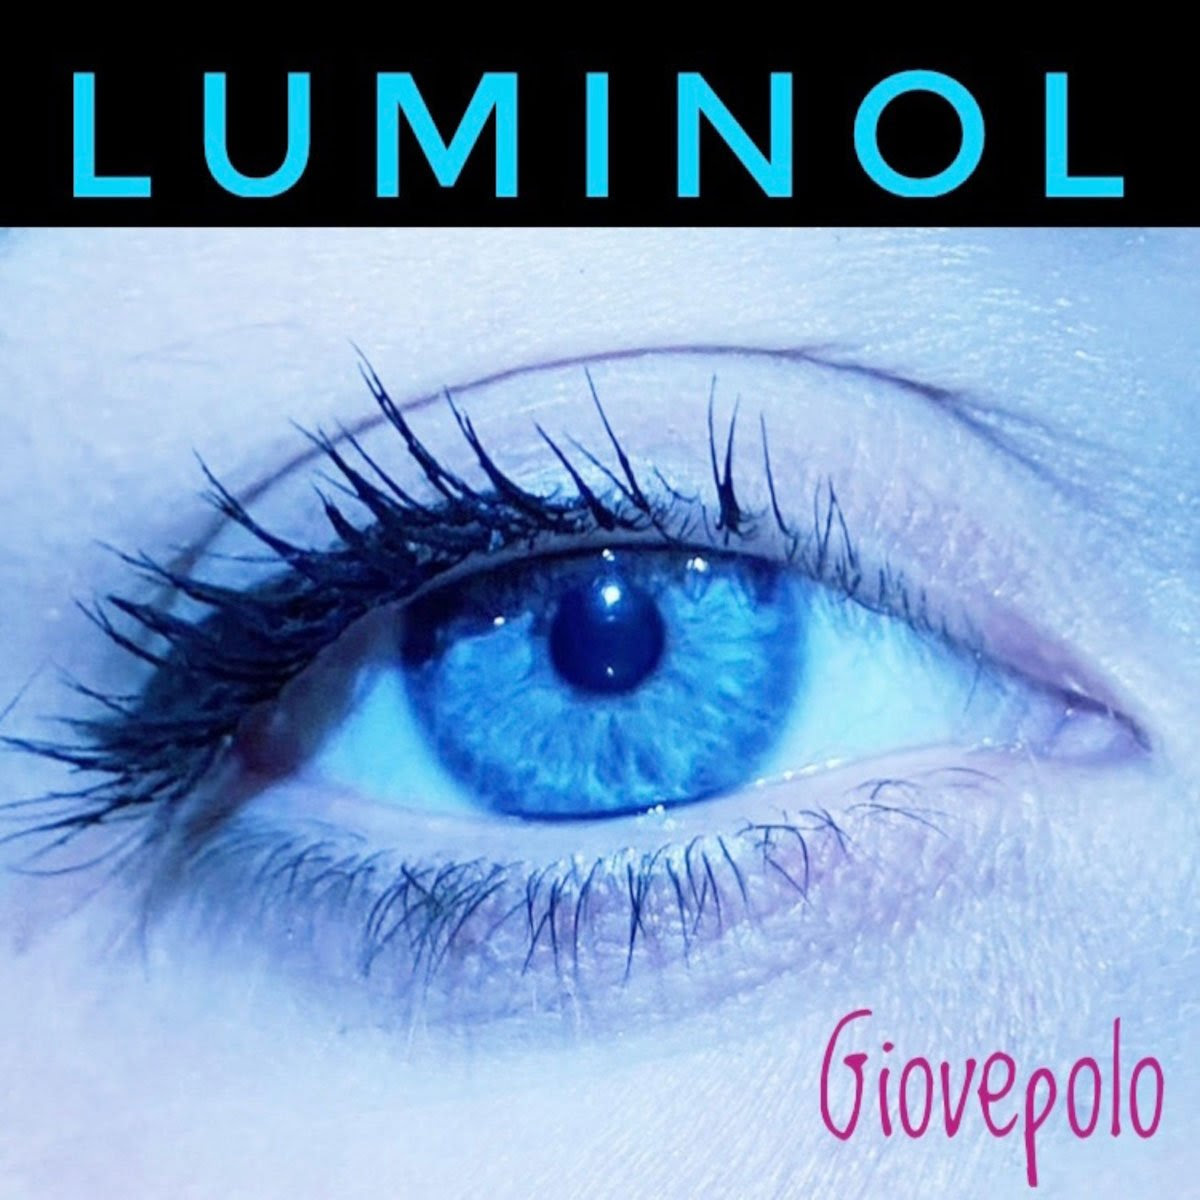 Giovepolo: venerdì 6 ottobre esce in radio e in digitale “Luminol” il nuovo singolo